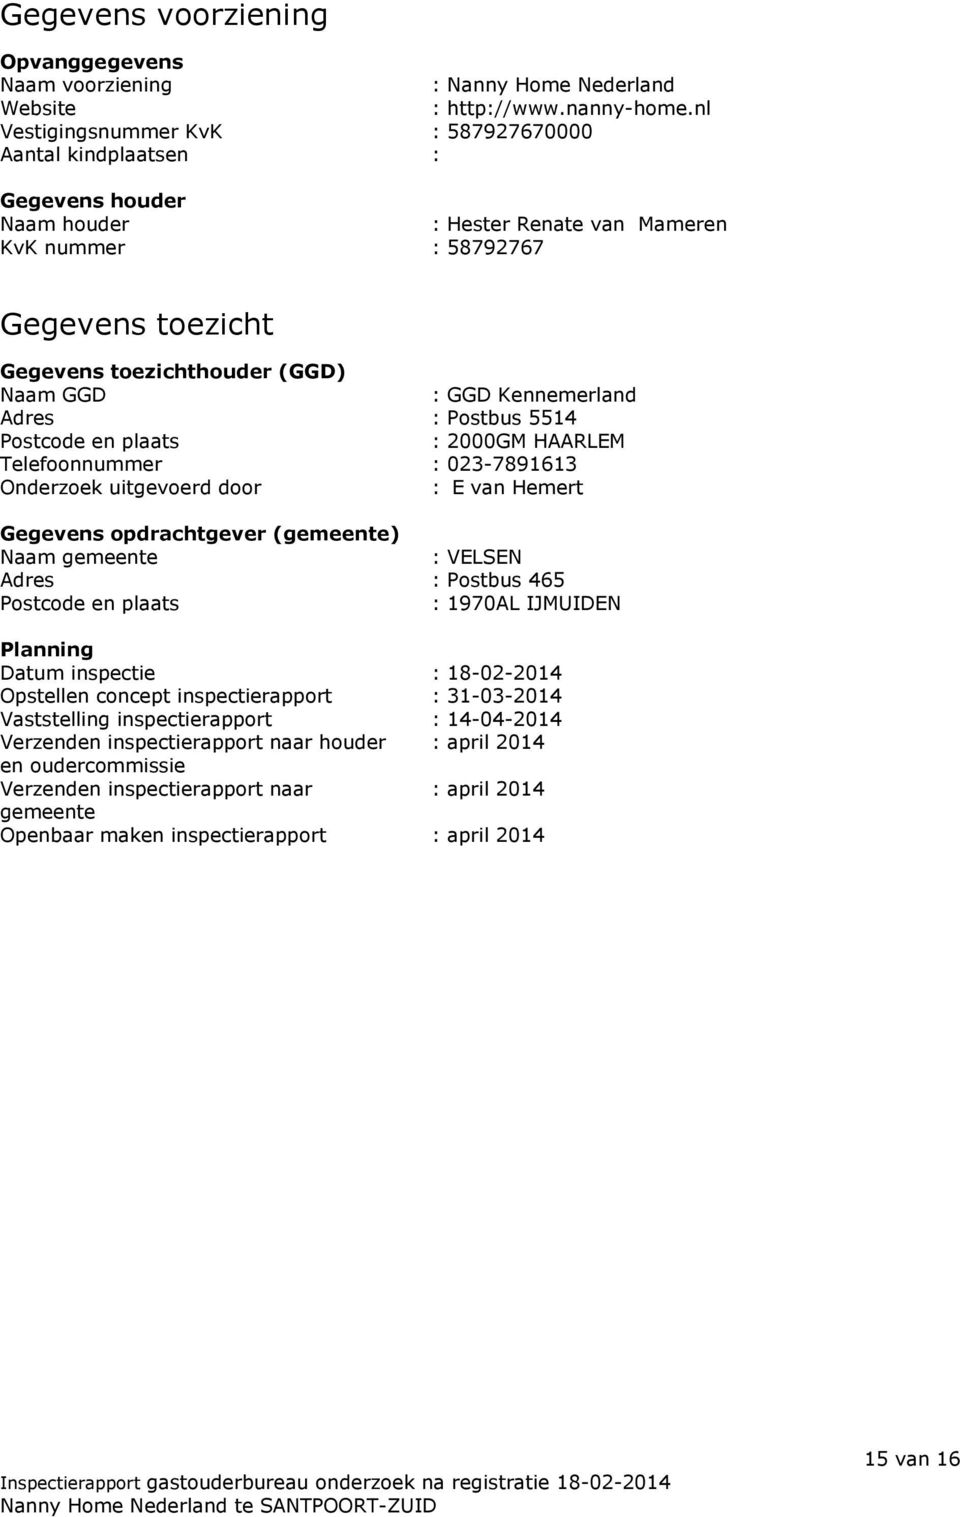 GGD Kennemerland Adres : Postbus 5514 Postcode en plaats : 2000GM HAARLEM Telefoonnummer : 023-7891613 Onderzoek uitgevoerd door : E van Hemert Gegevens opdrachtgever (gemeente) Naam gemeente :